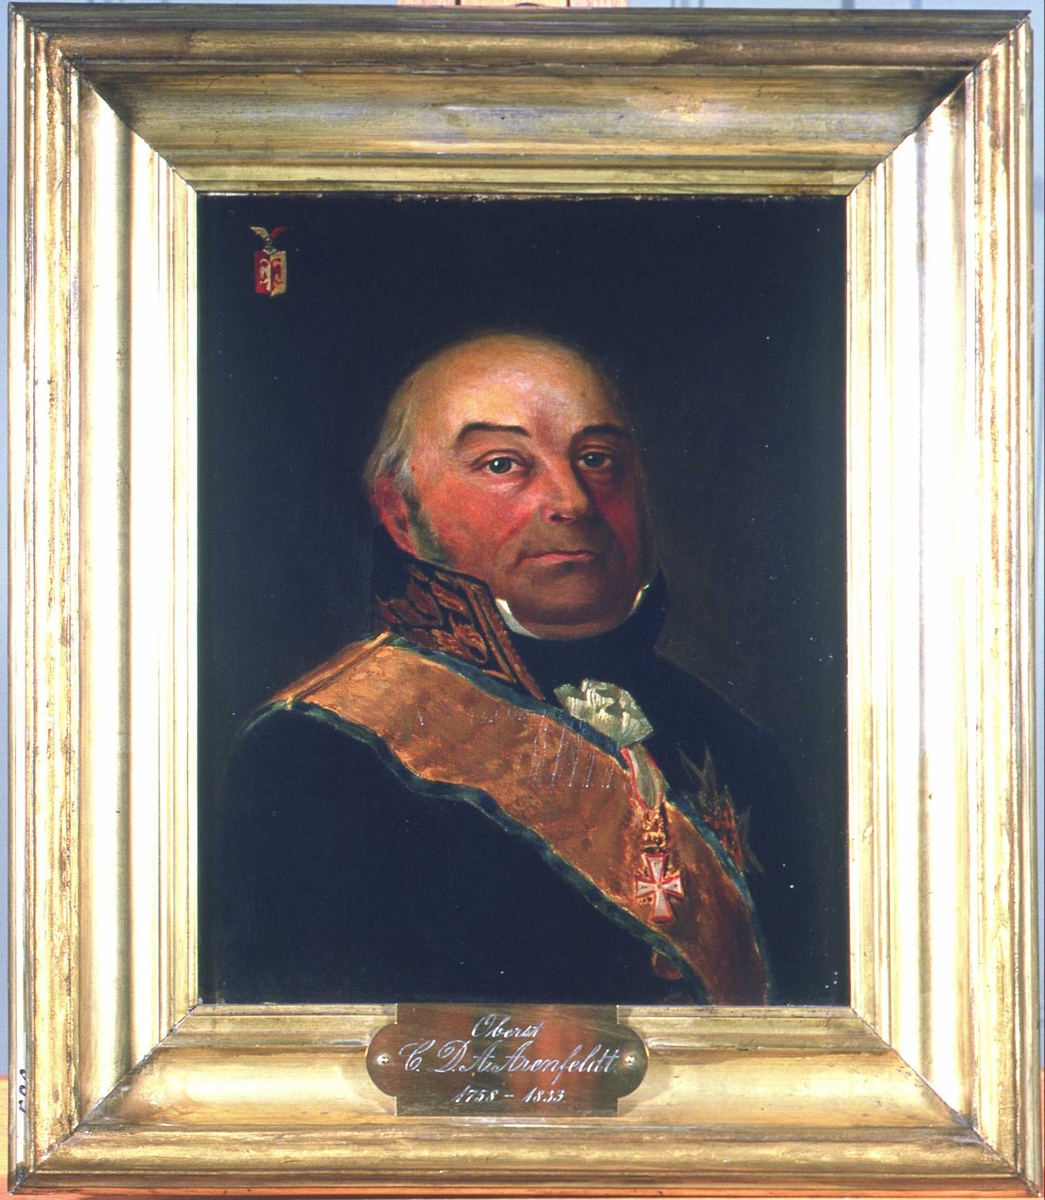 Portrett av oberst C.D.A Arenfeldt. Mørk uniform, høy krave, ordensbånd i gult og blått, 2 ordener. Mørk bakgrunn, m/våpeskjold i øvre venstre hjørne.